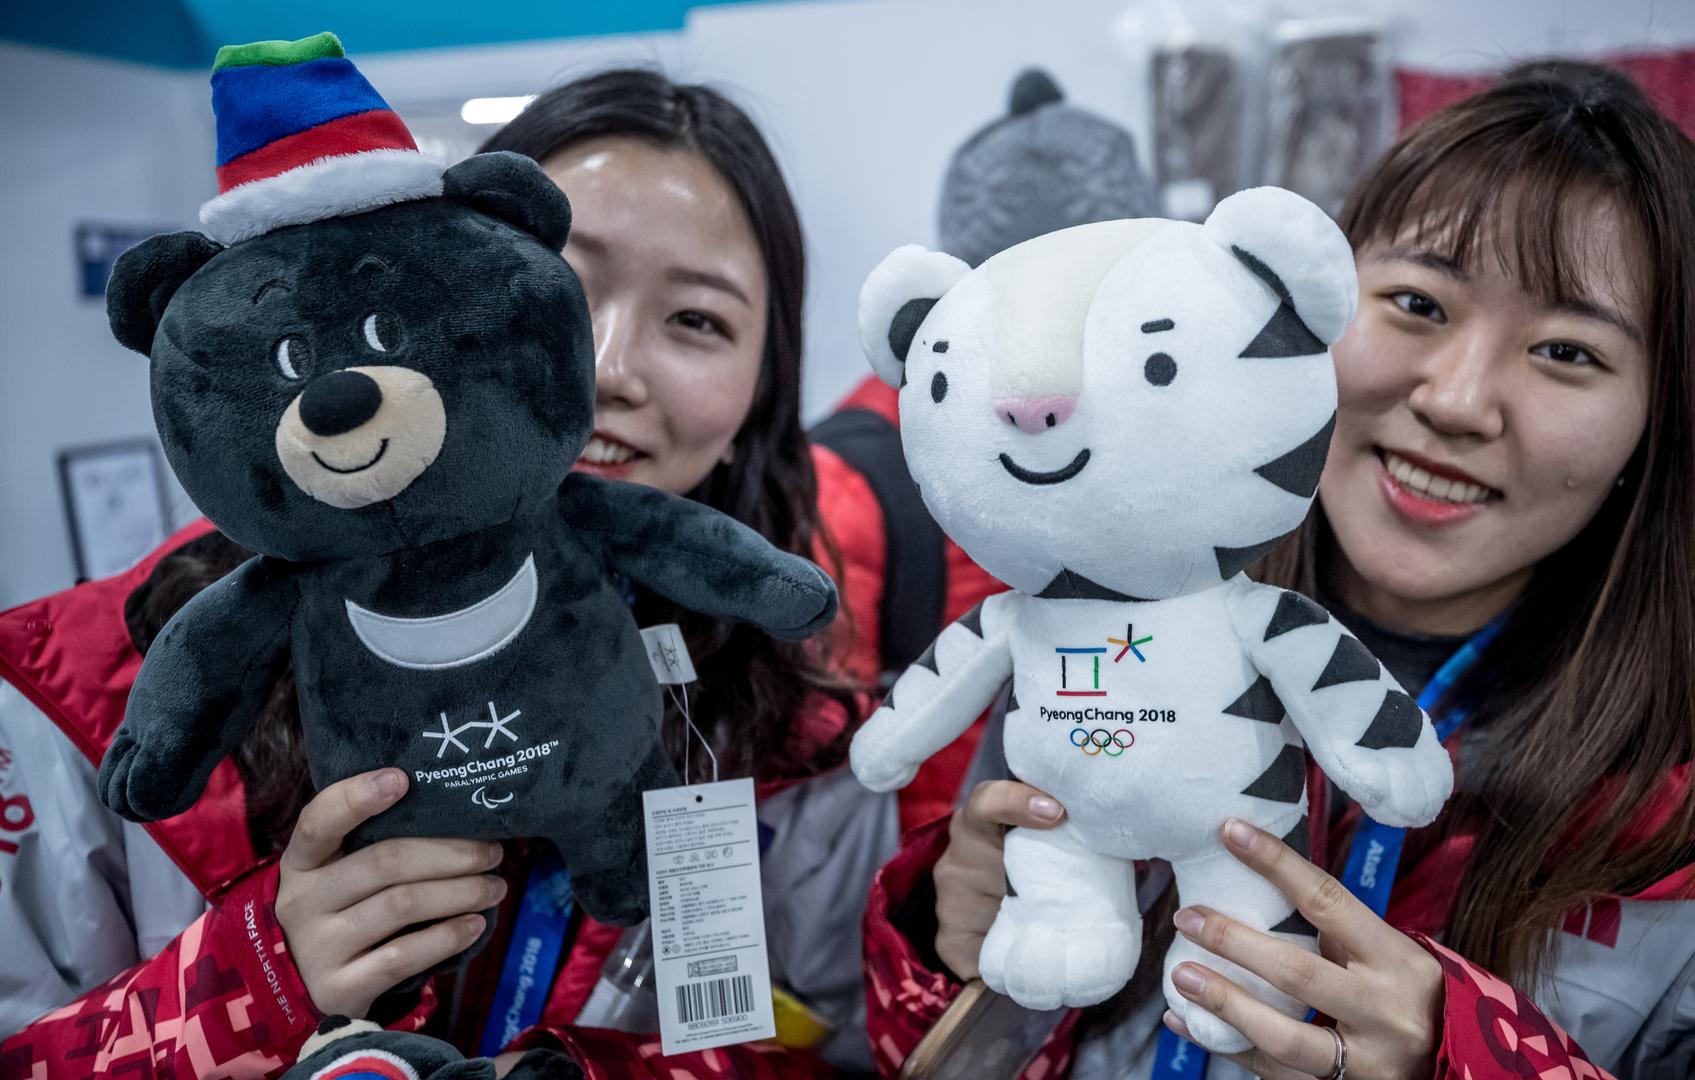 Maskota ovogodišnjeg ZOI-a u južnokorejskom Pjongčangu je bijeli tigar Soohorang, dok je maskota paraolimpijskih Igara azijski crni medvjed Bandabi